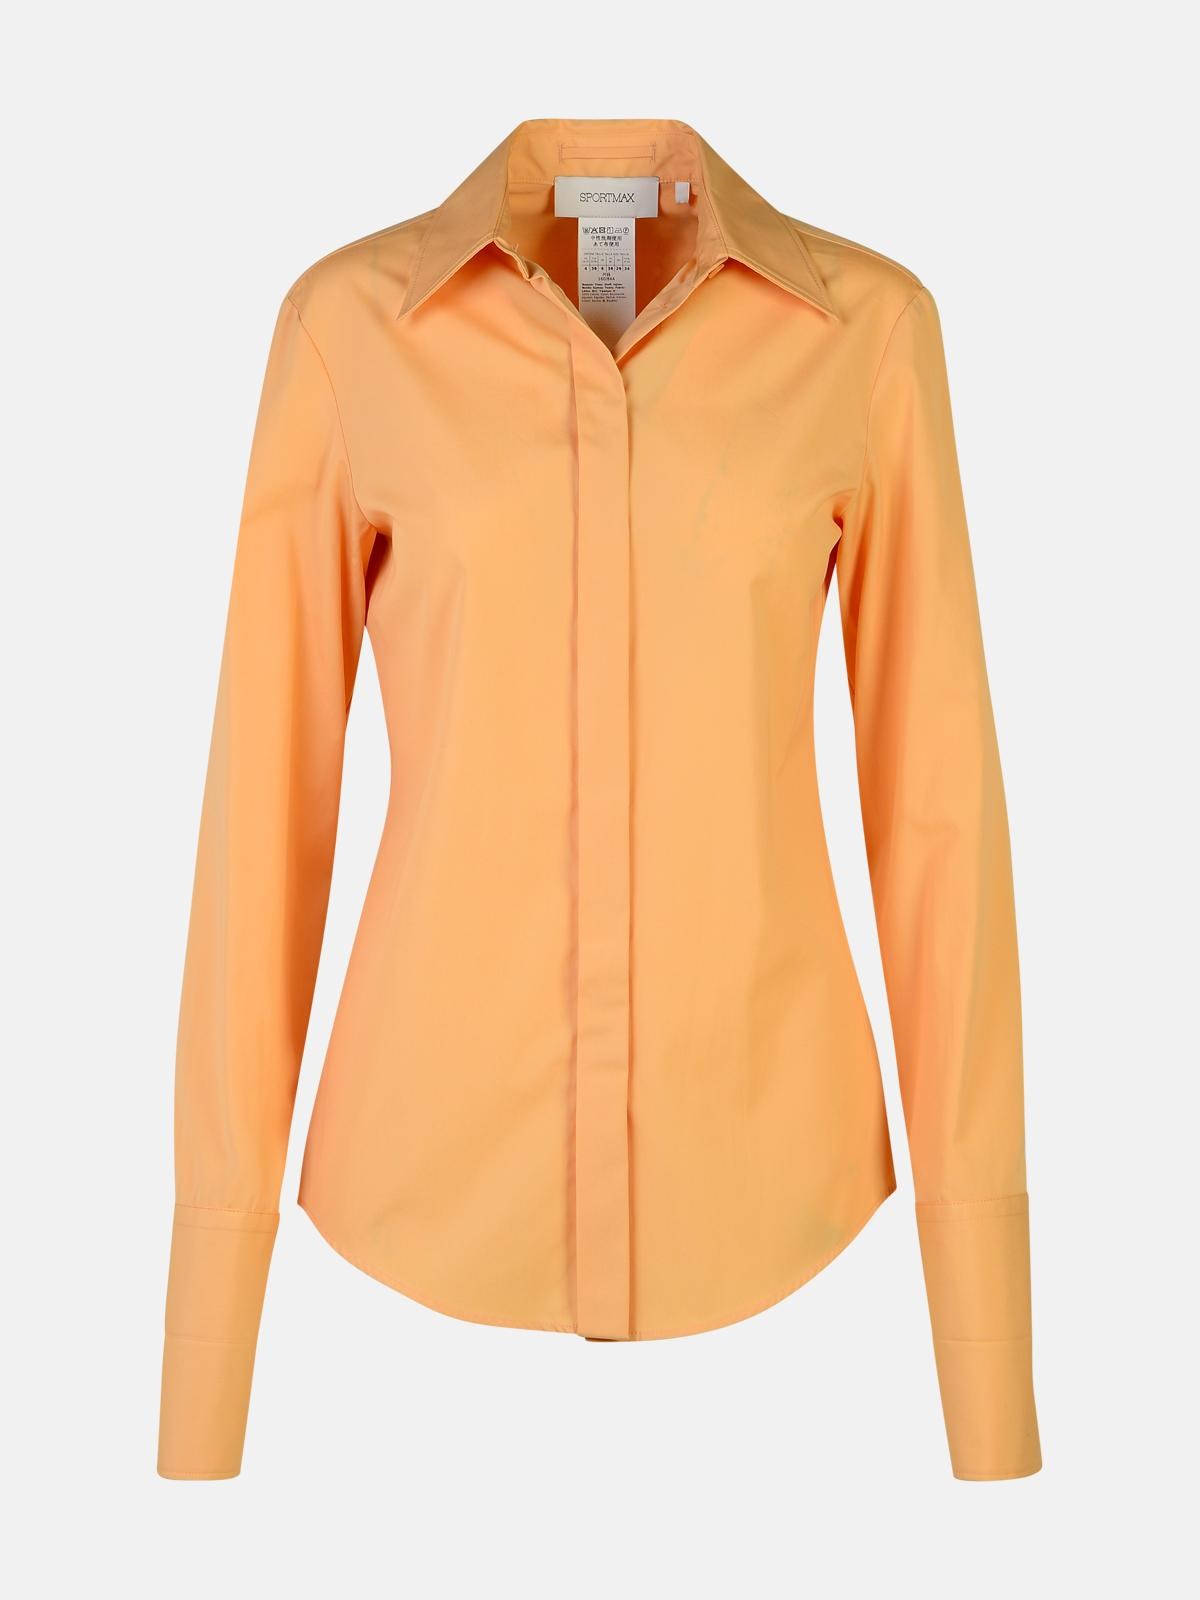 Sportmax 'oste' Orange Cotton Shirt In Nude